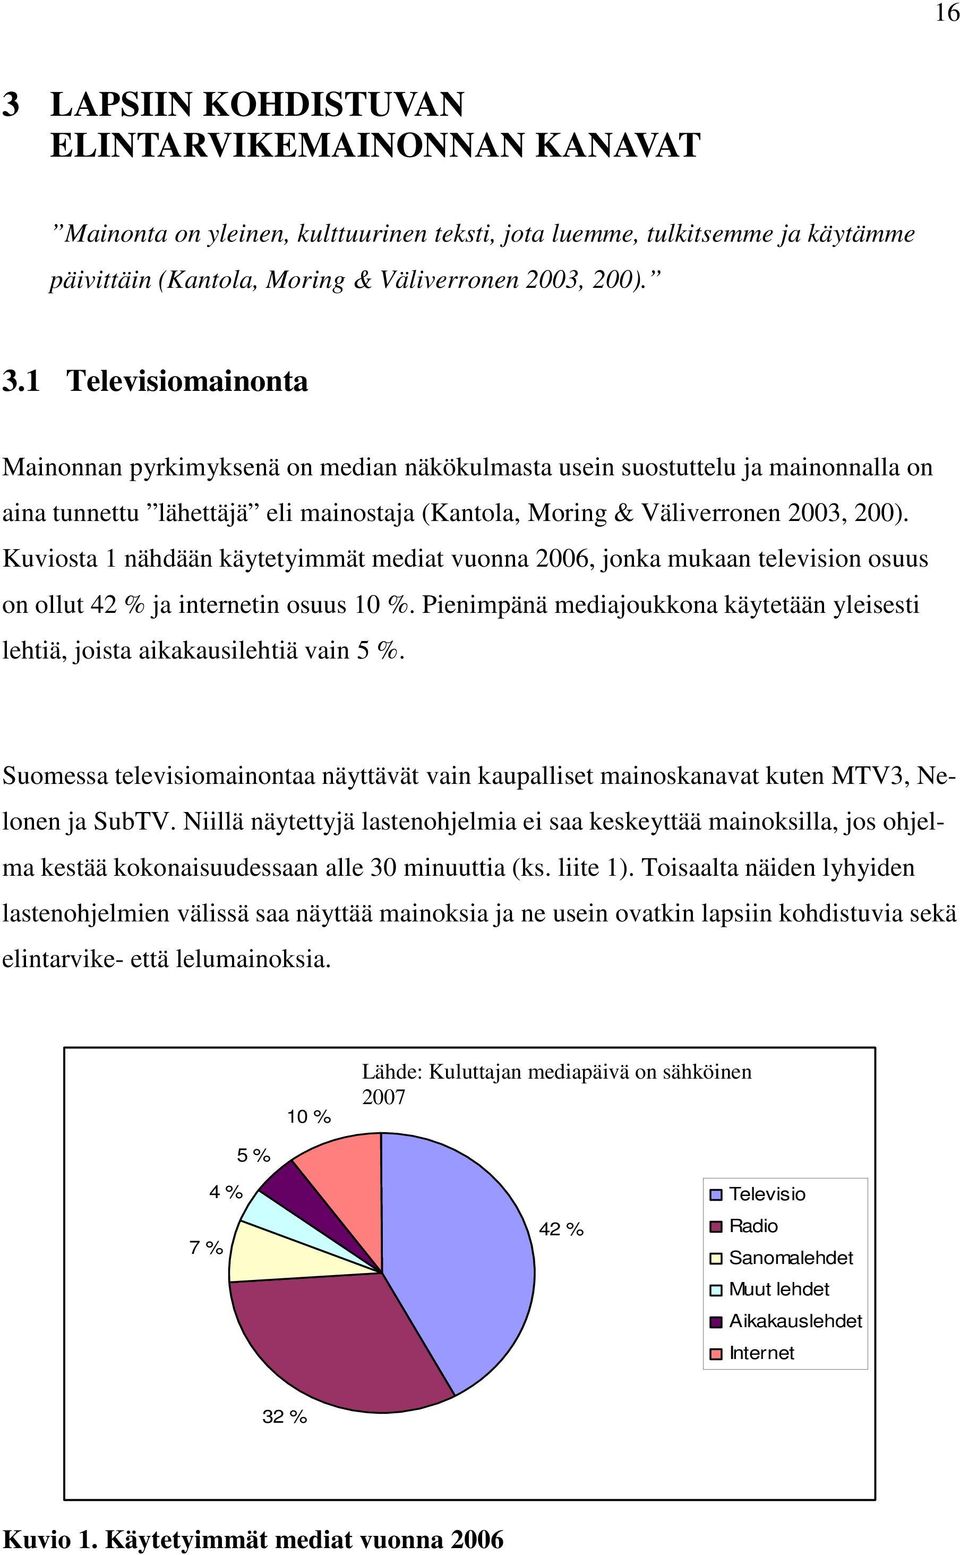 Pienimpänä mediajoukkona käytetään yleisesti lehtiä, joista aikakausilehtiä vain 5 %. Suomessa televisiomainontaa näyttävät vain kaupalliset mainoskanavat kuten MTV3, Nelonen ja SubTV.